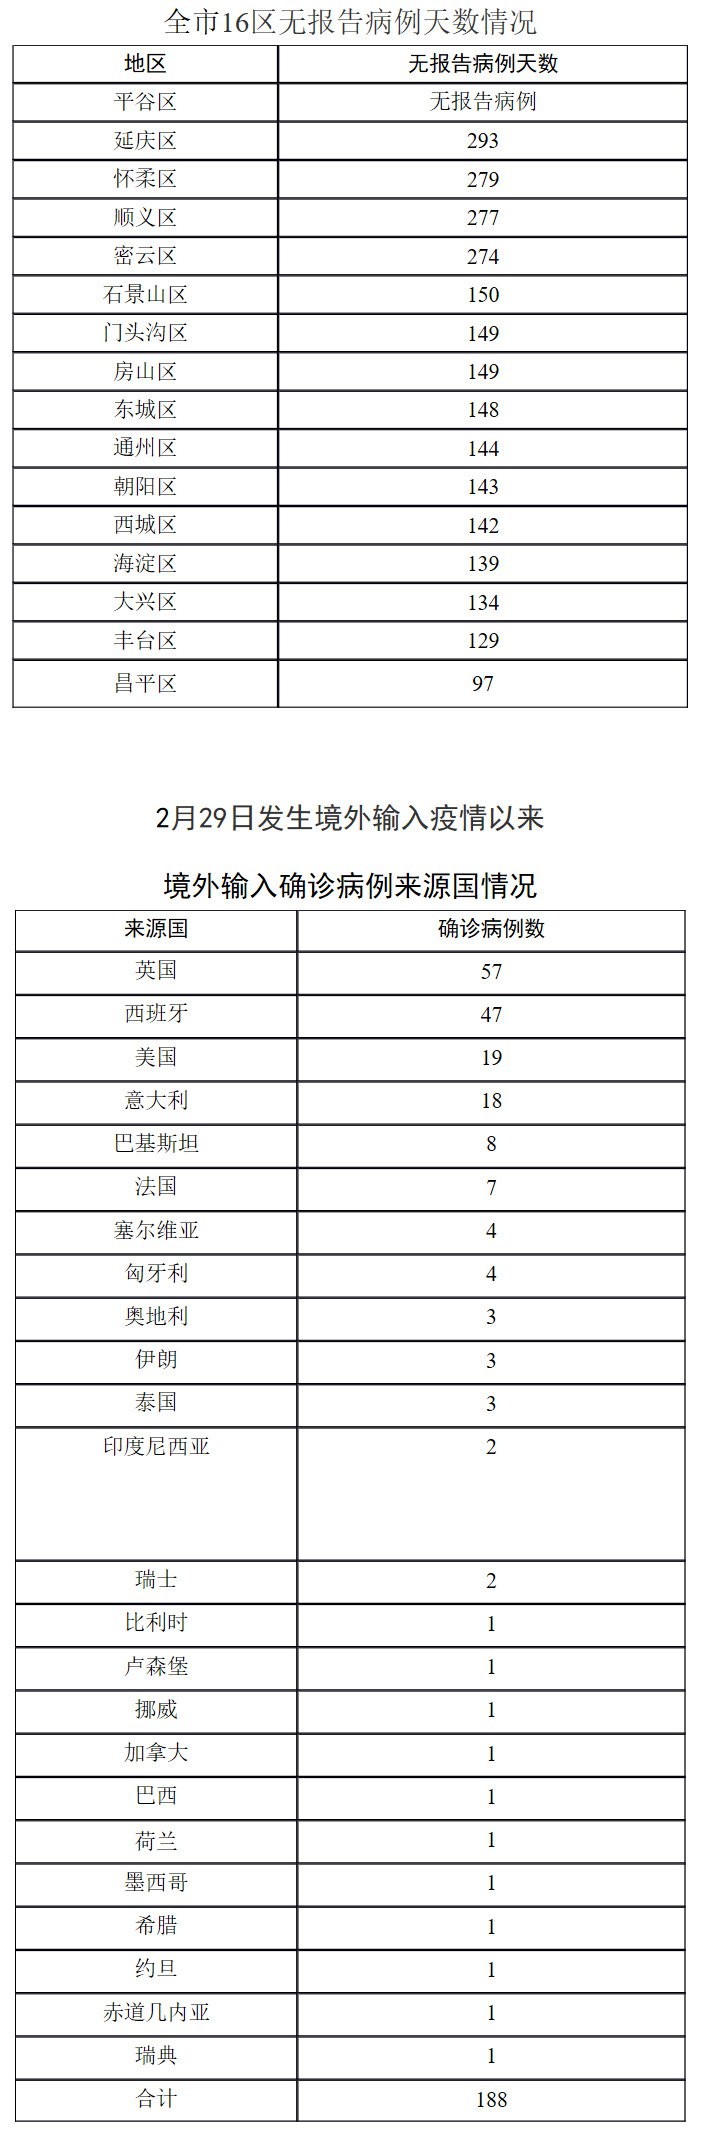 北京11月11日无新增报告新冠肺炎确诊病例